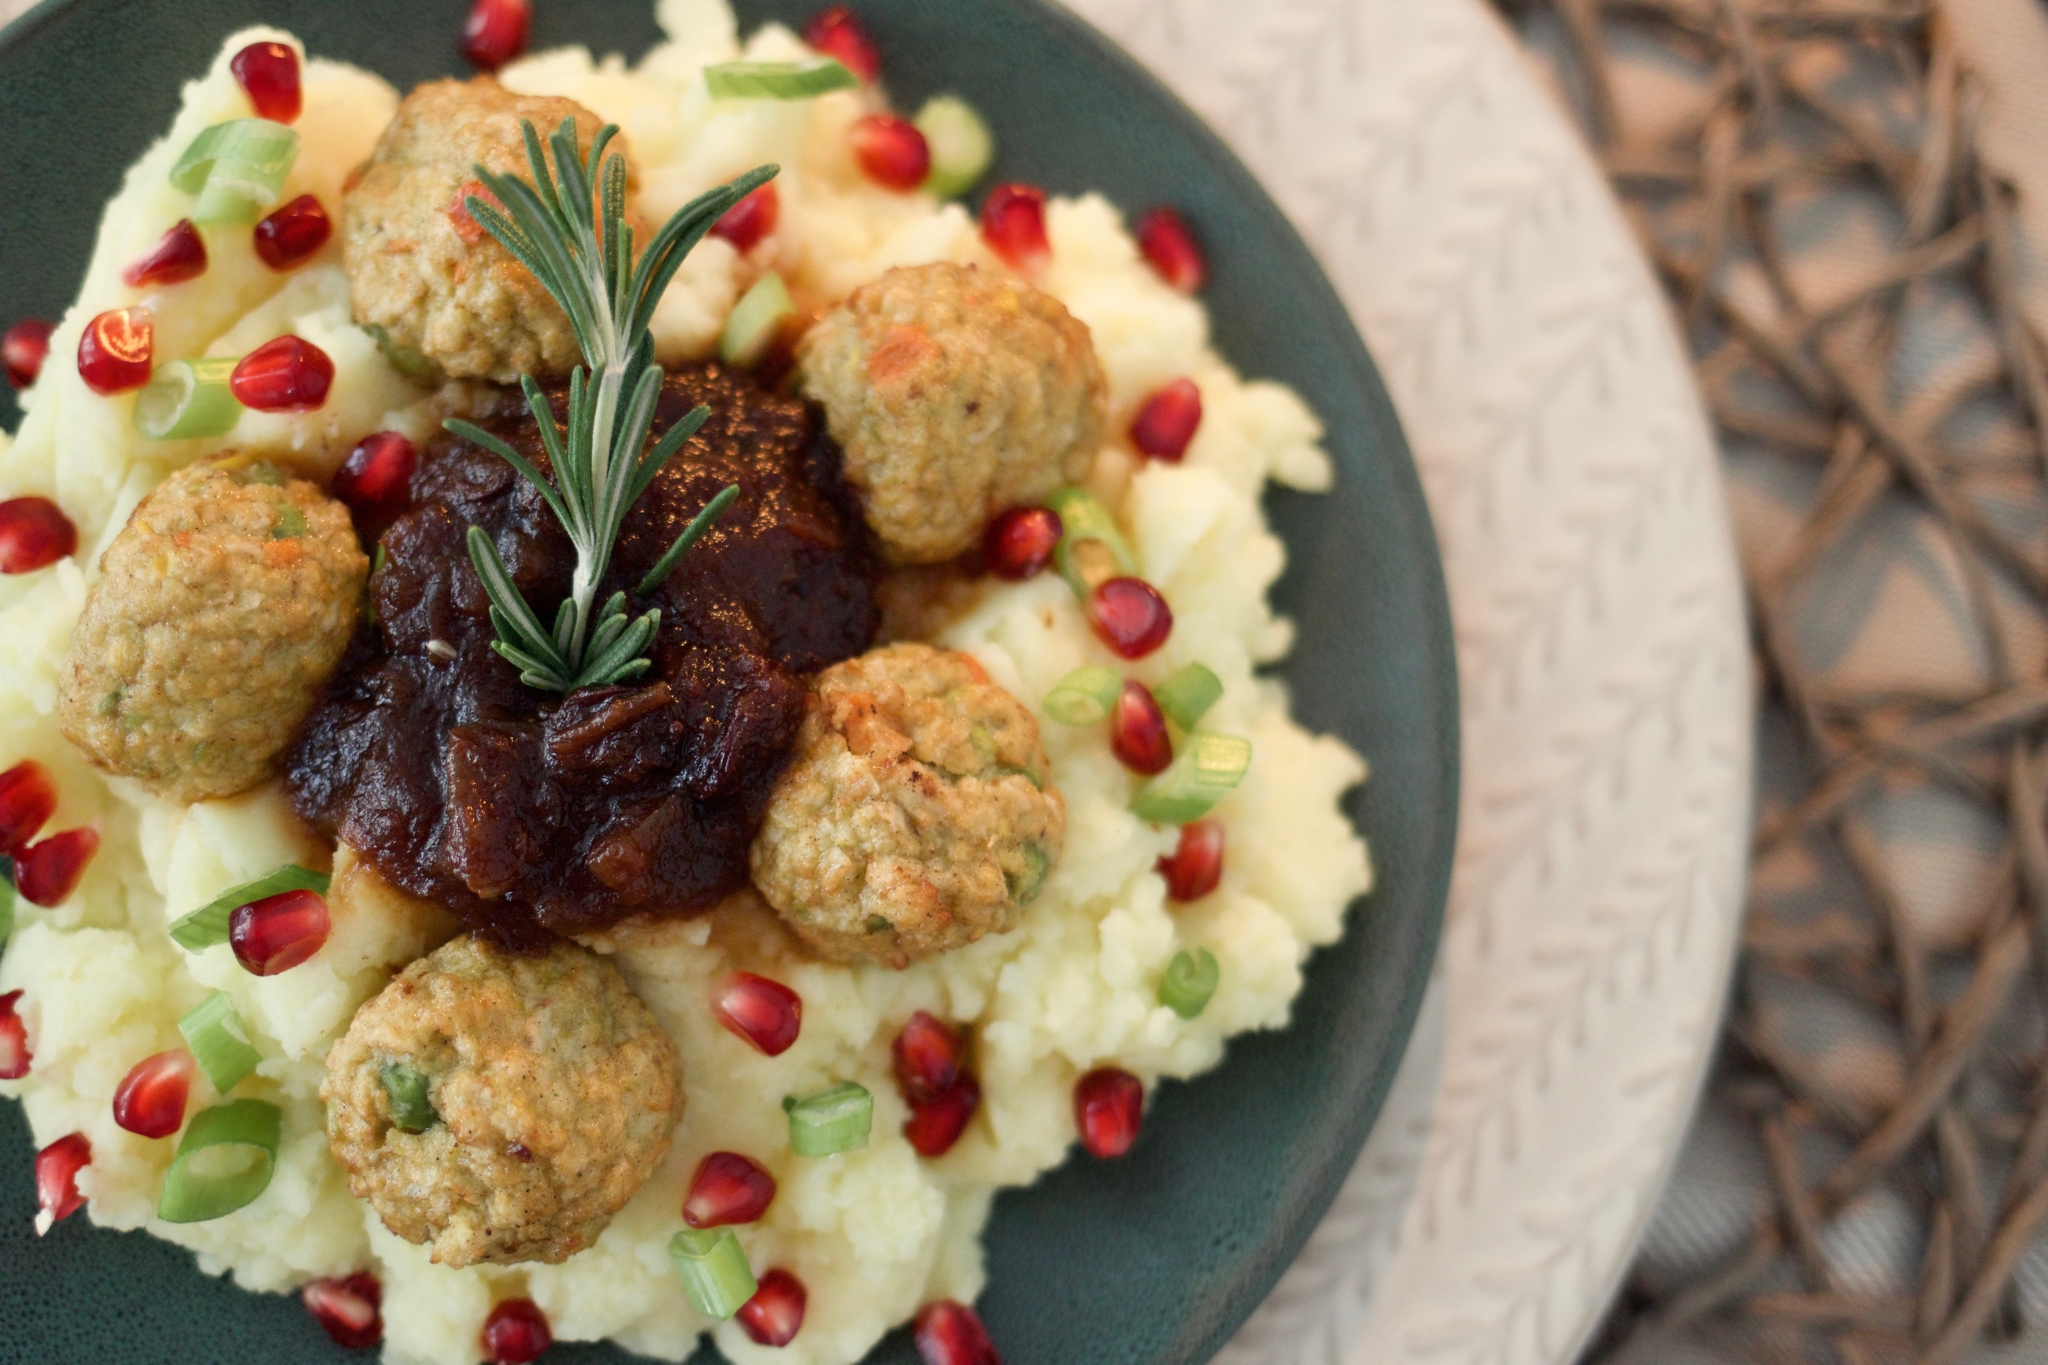 Nahaufnahme des Gerichts von oben: Vegetarisches Rezept für Weihnachten: Gemüsebällchen mit Pflaumen-Zwiebel-Chutney und Kartoffelbrei